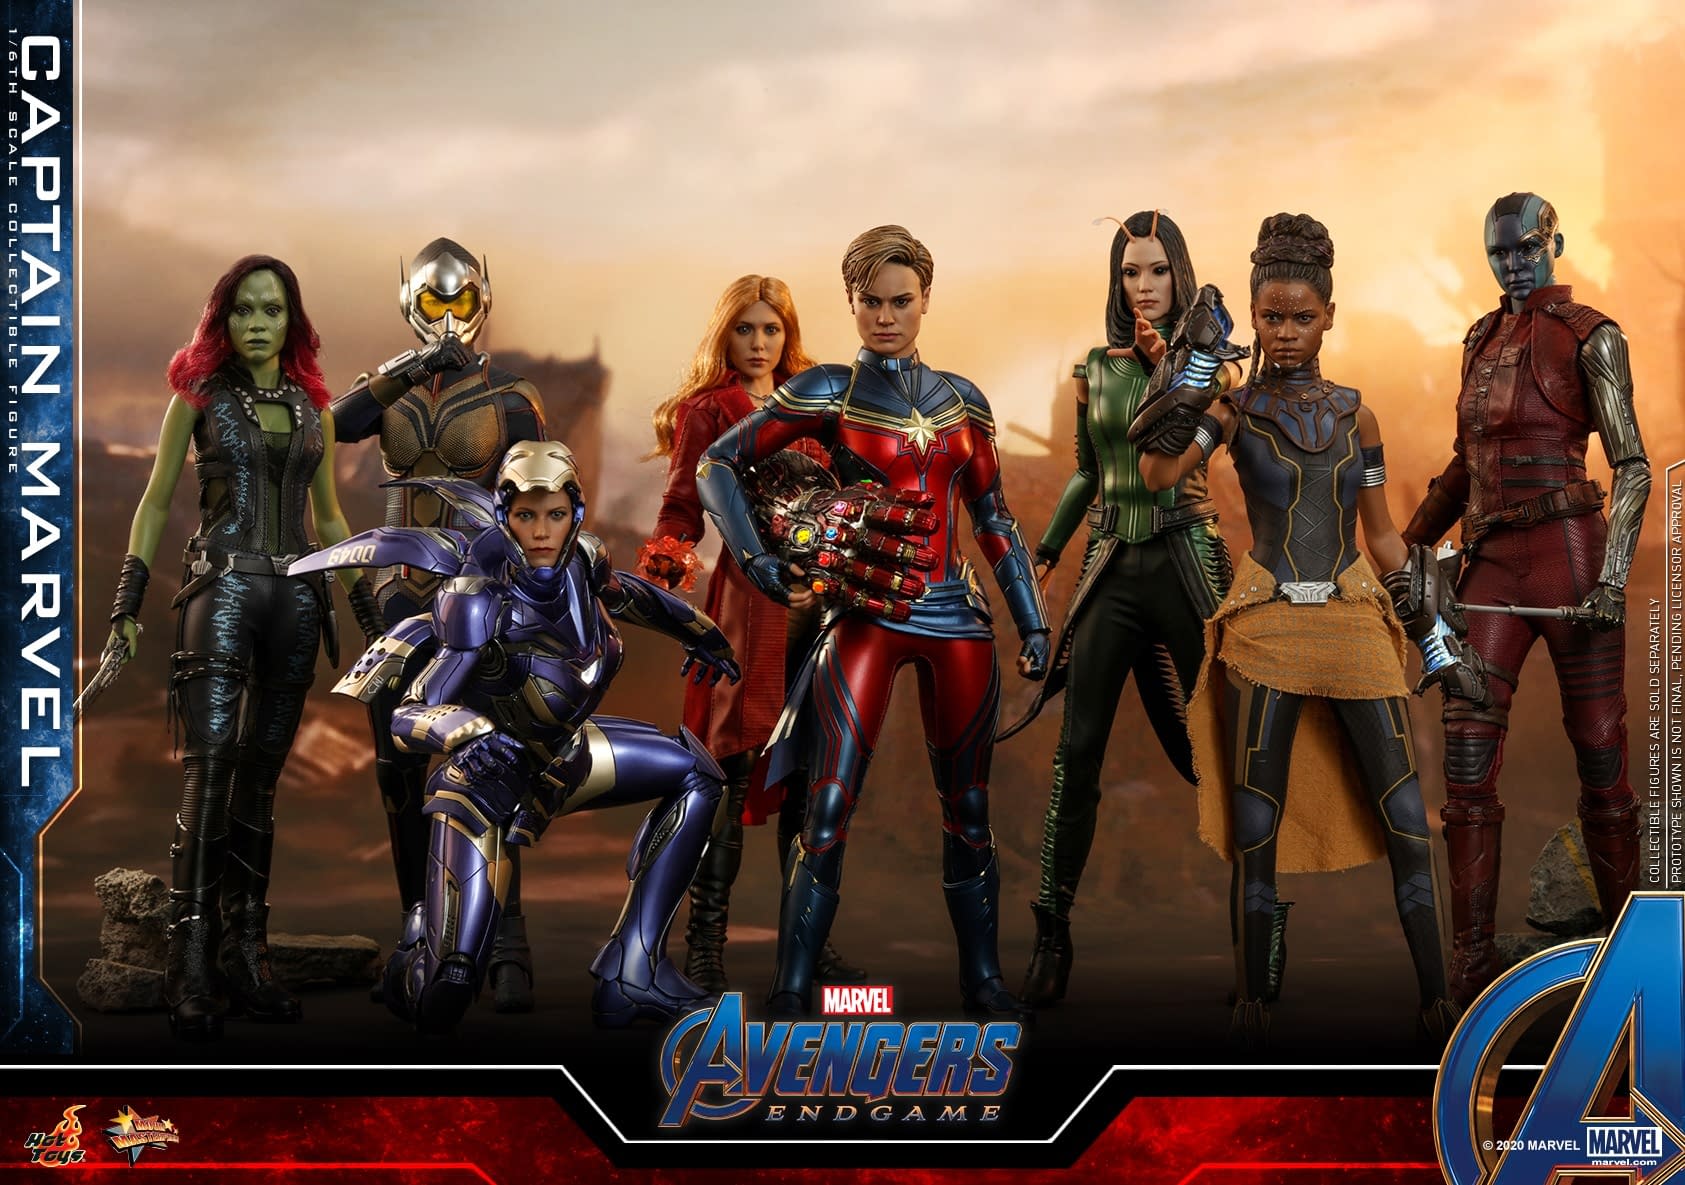 Avengers: Endgame Hot Toys Captain Marvel Figure